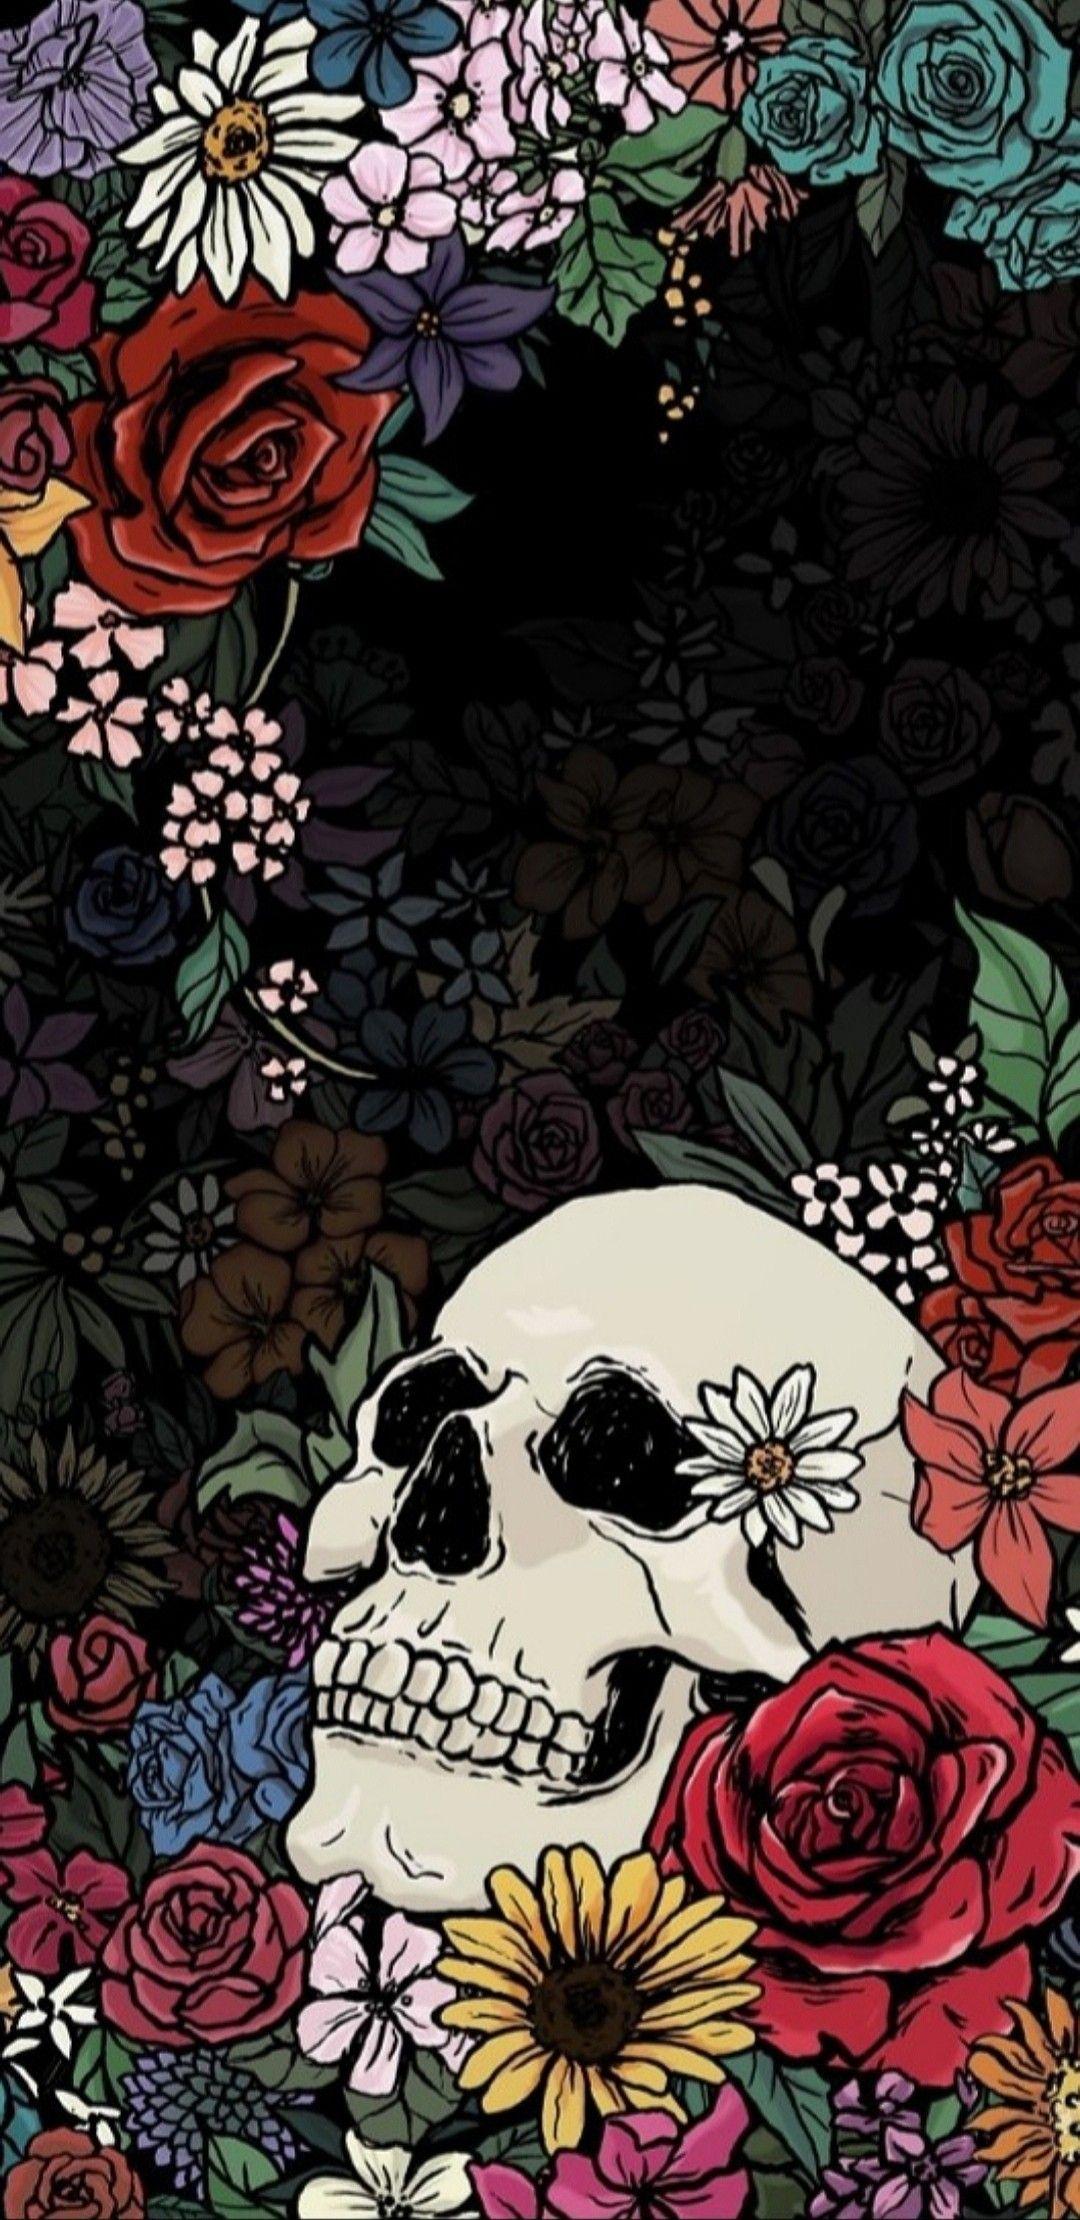 Skull / Skeleton Wallpaper. Skull wallpaper, Art wallpaper, Wallpaper background